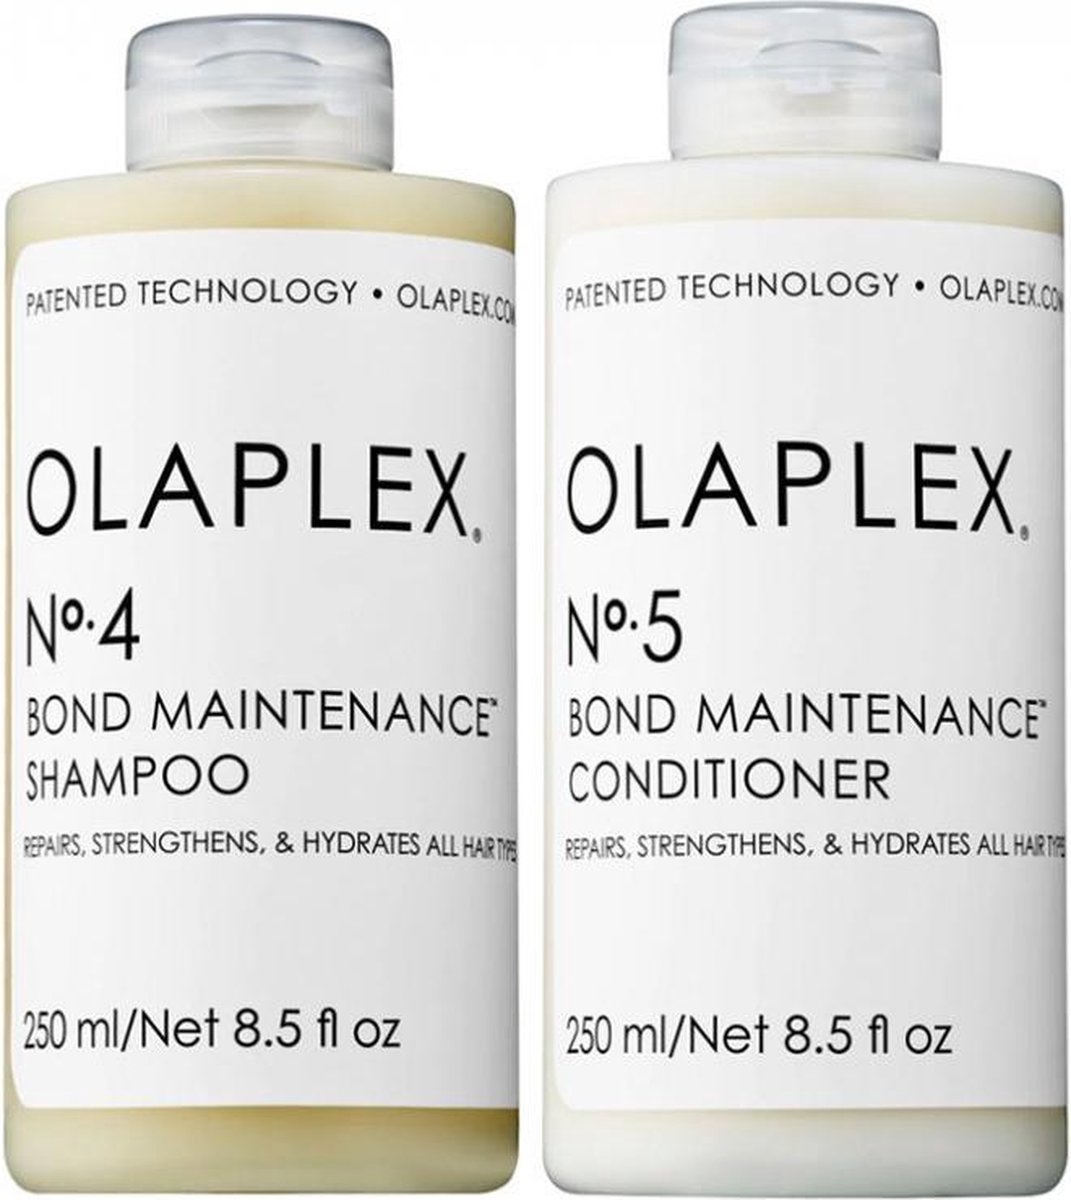 Olaplex Duo-Pack Nr. 4+Nr. 5 Shampoo + 250ml